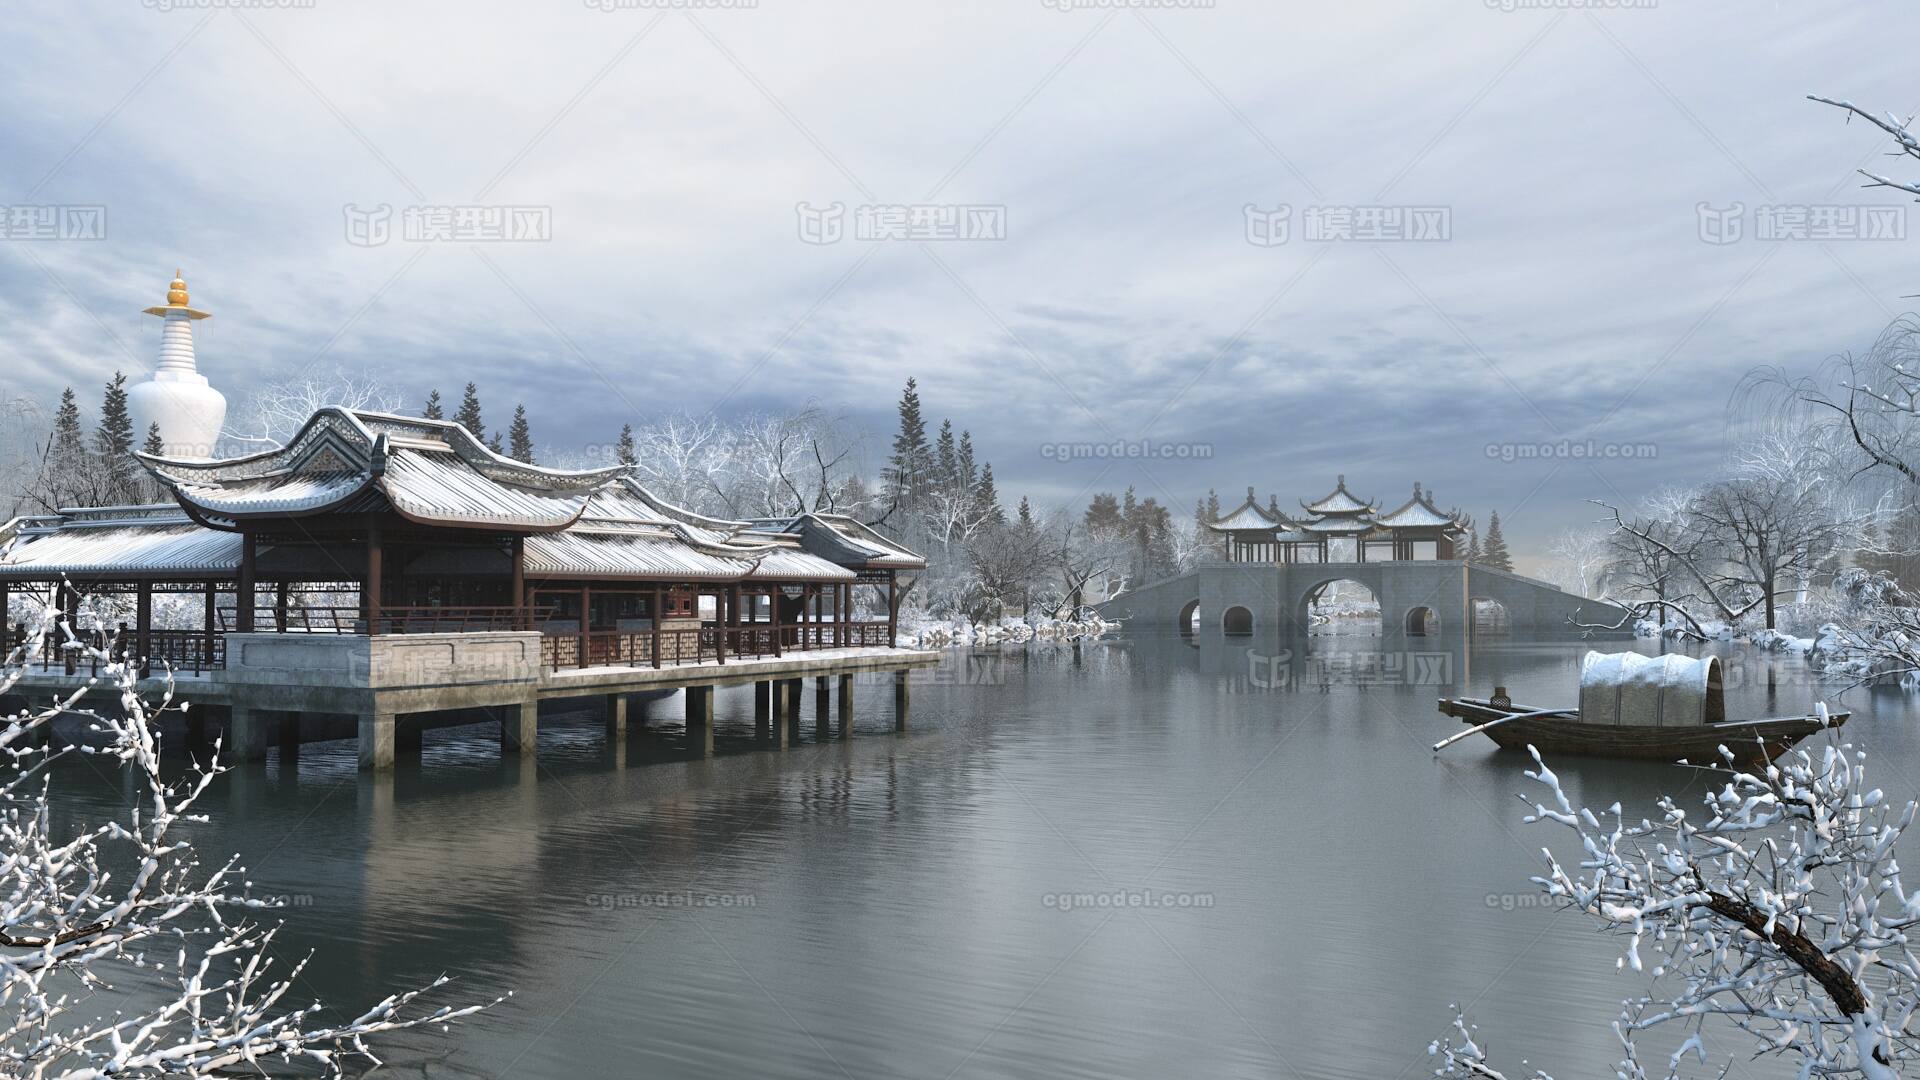 扬州冬日雪景唯美,高清图片,壁纸,自然风景-桌面城市